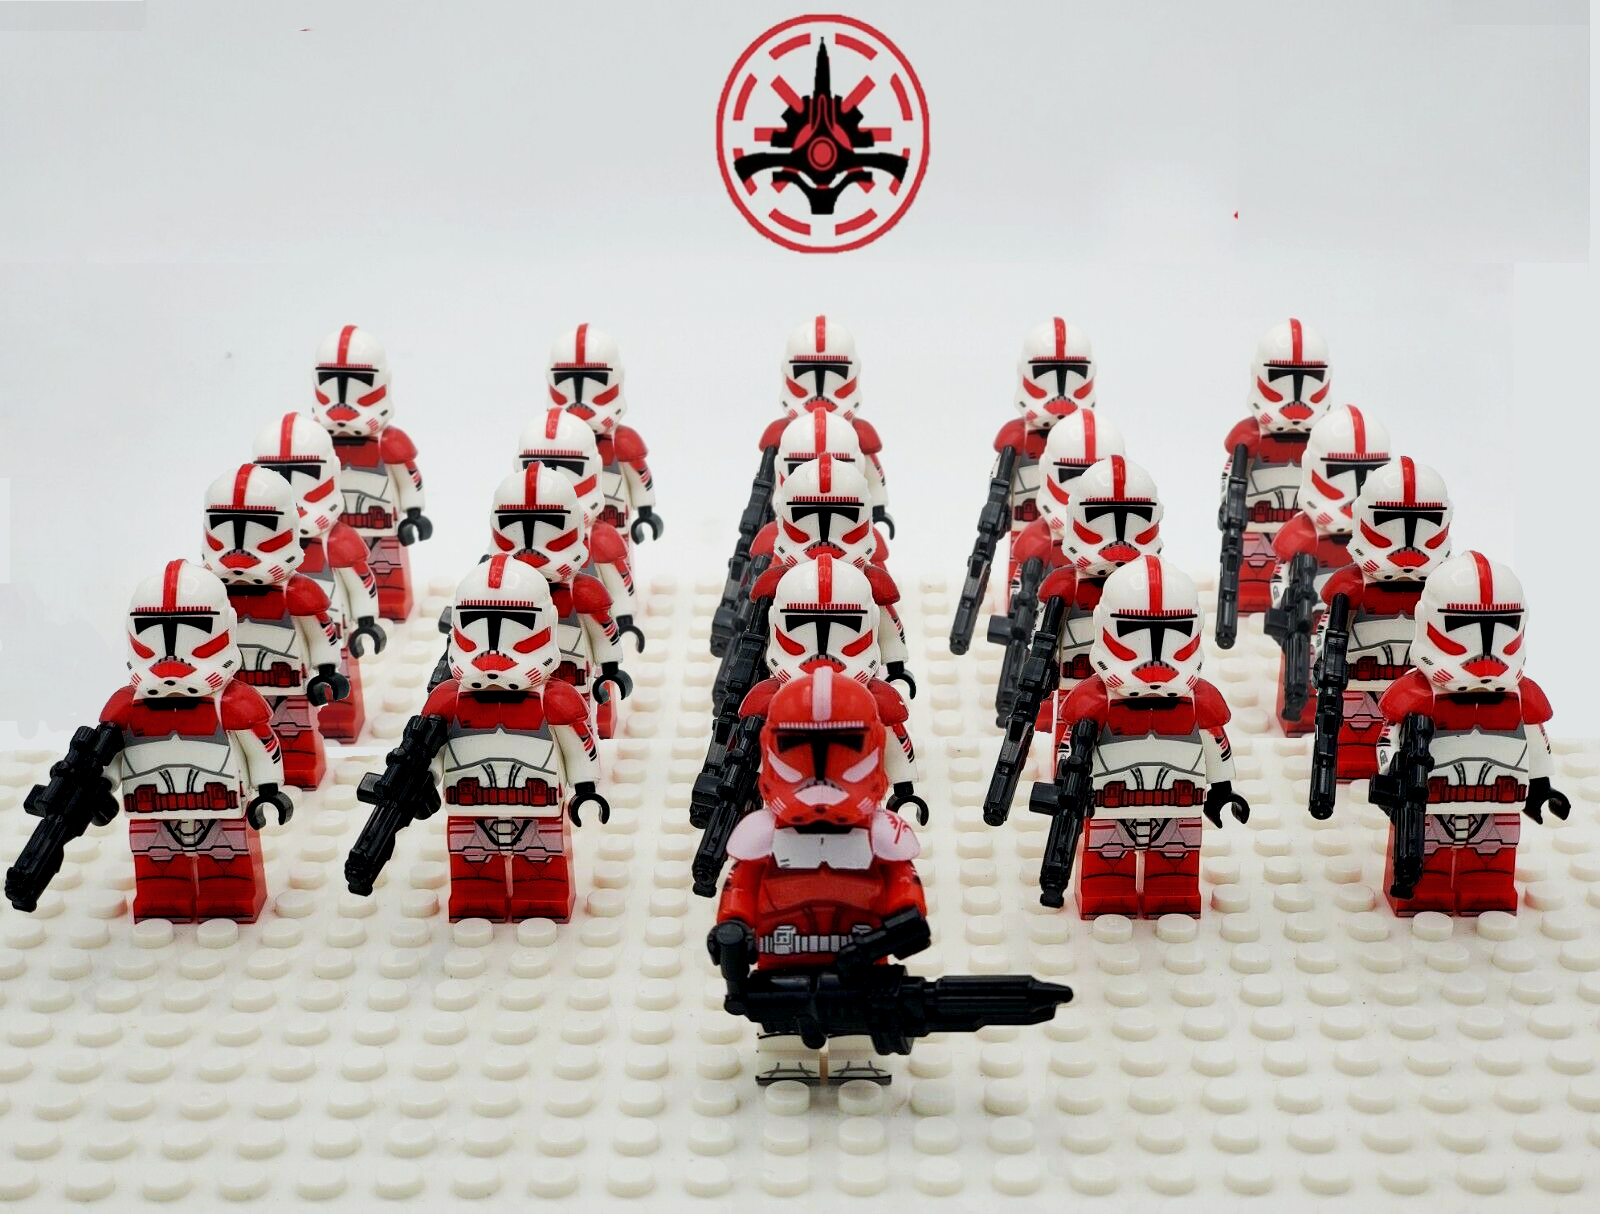 21pcs lot STAR WARS Clone Trooper Commander Fox Rex Mini toy building block 